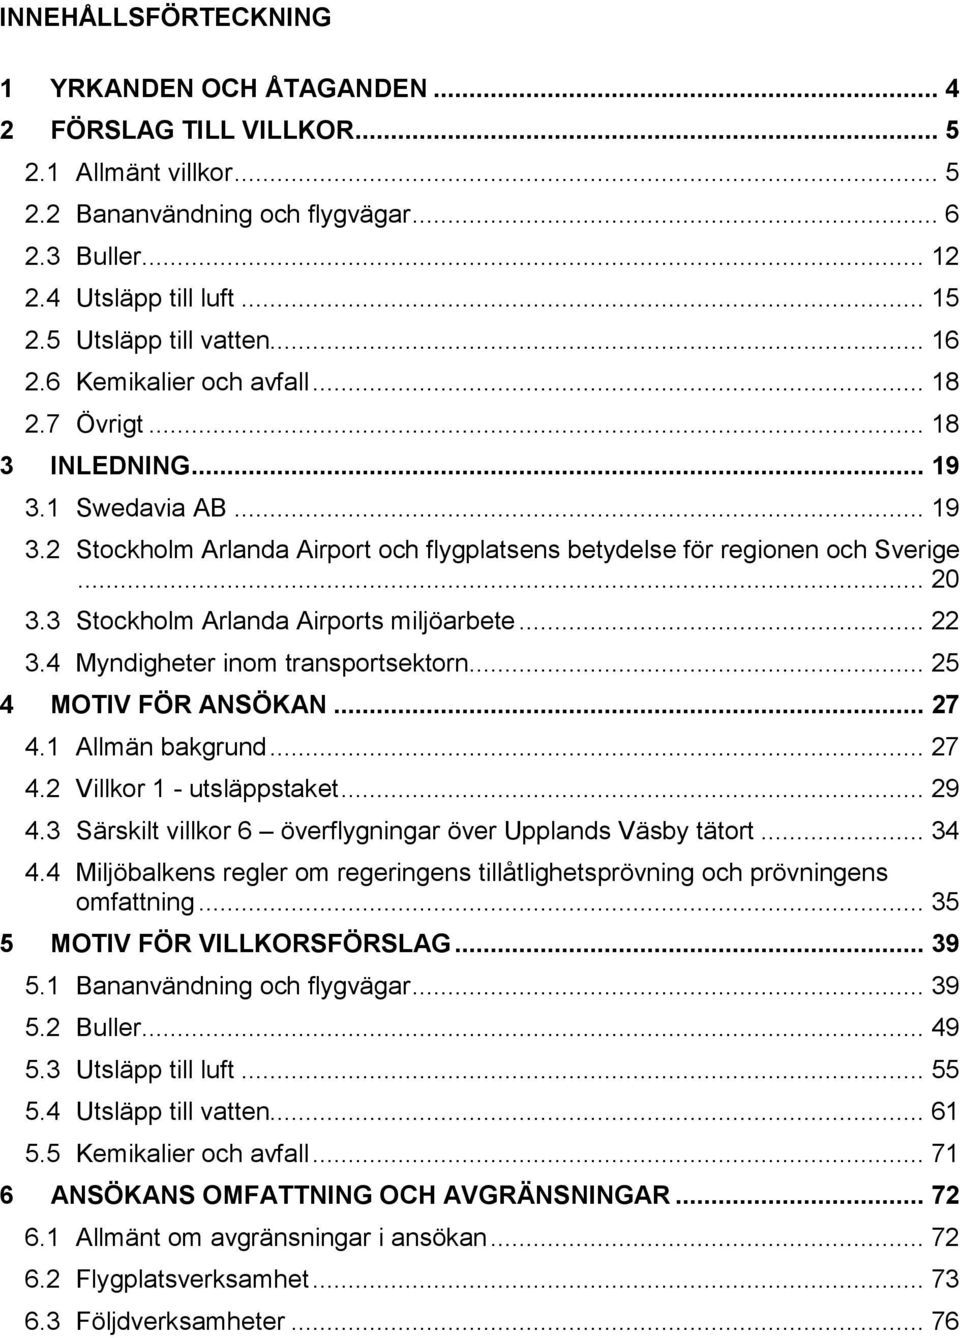 .. 20 3.3 Stockholm Arlanda Airports miljöarbete... 22 3.4 Myndigheter inom transportsektorn... 25 4 MOTIV FÖR ANSÖKAN... 27 4.1 Allmän bakgrund... 27 4.2 Villkor 1 - utsläppstaket... 29 4.